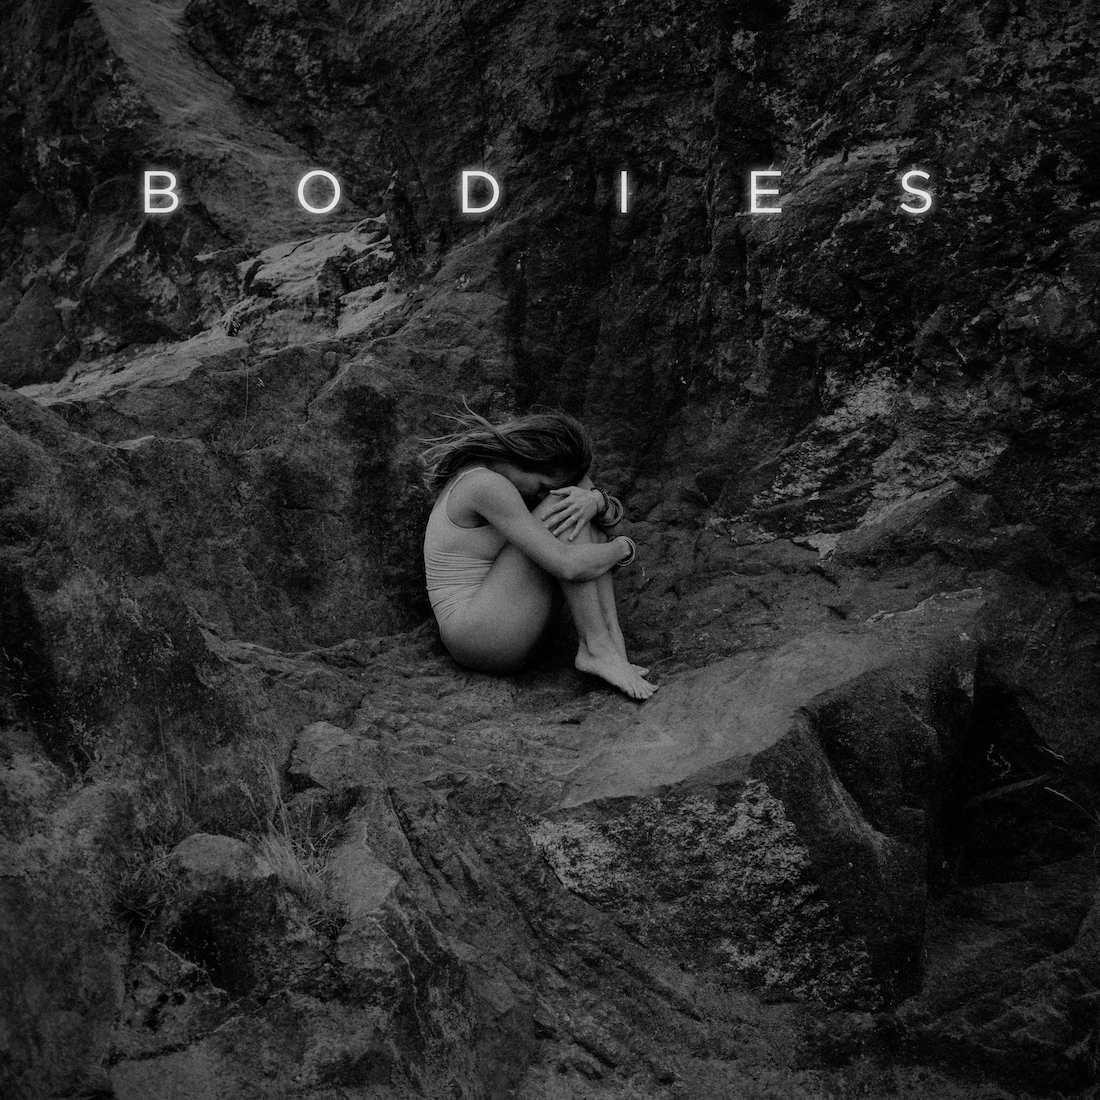 Black Pines ‘Bodies’ EP album artwork